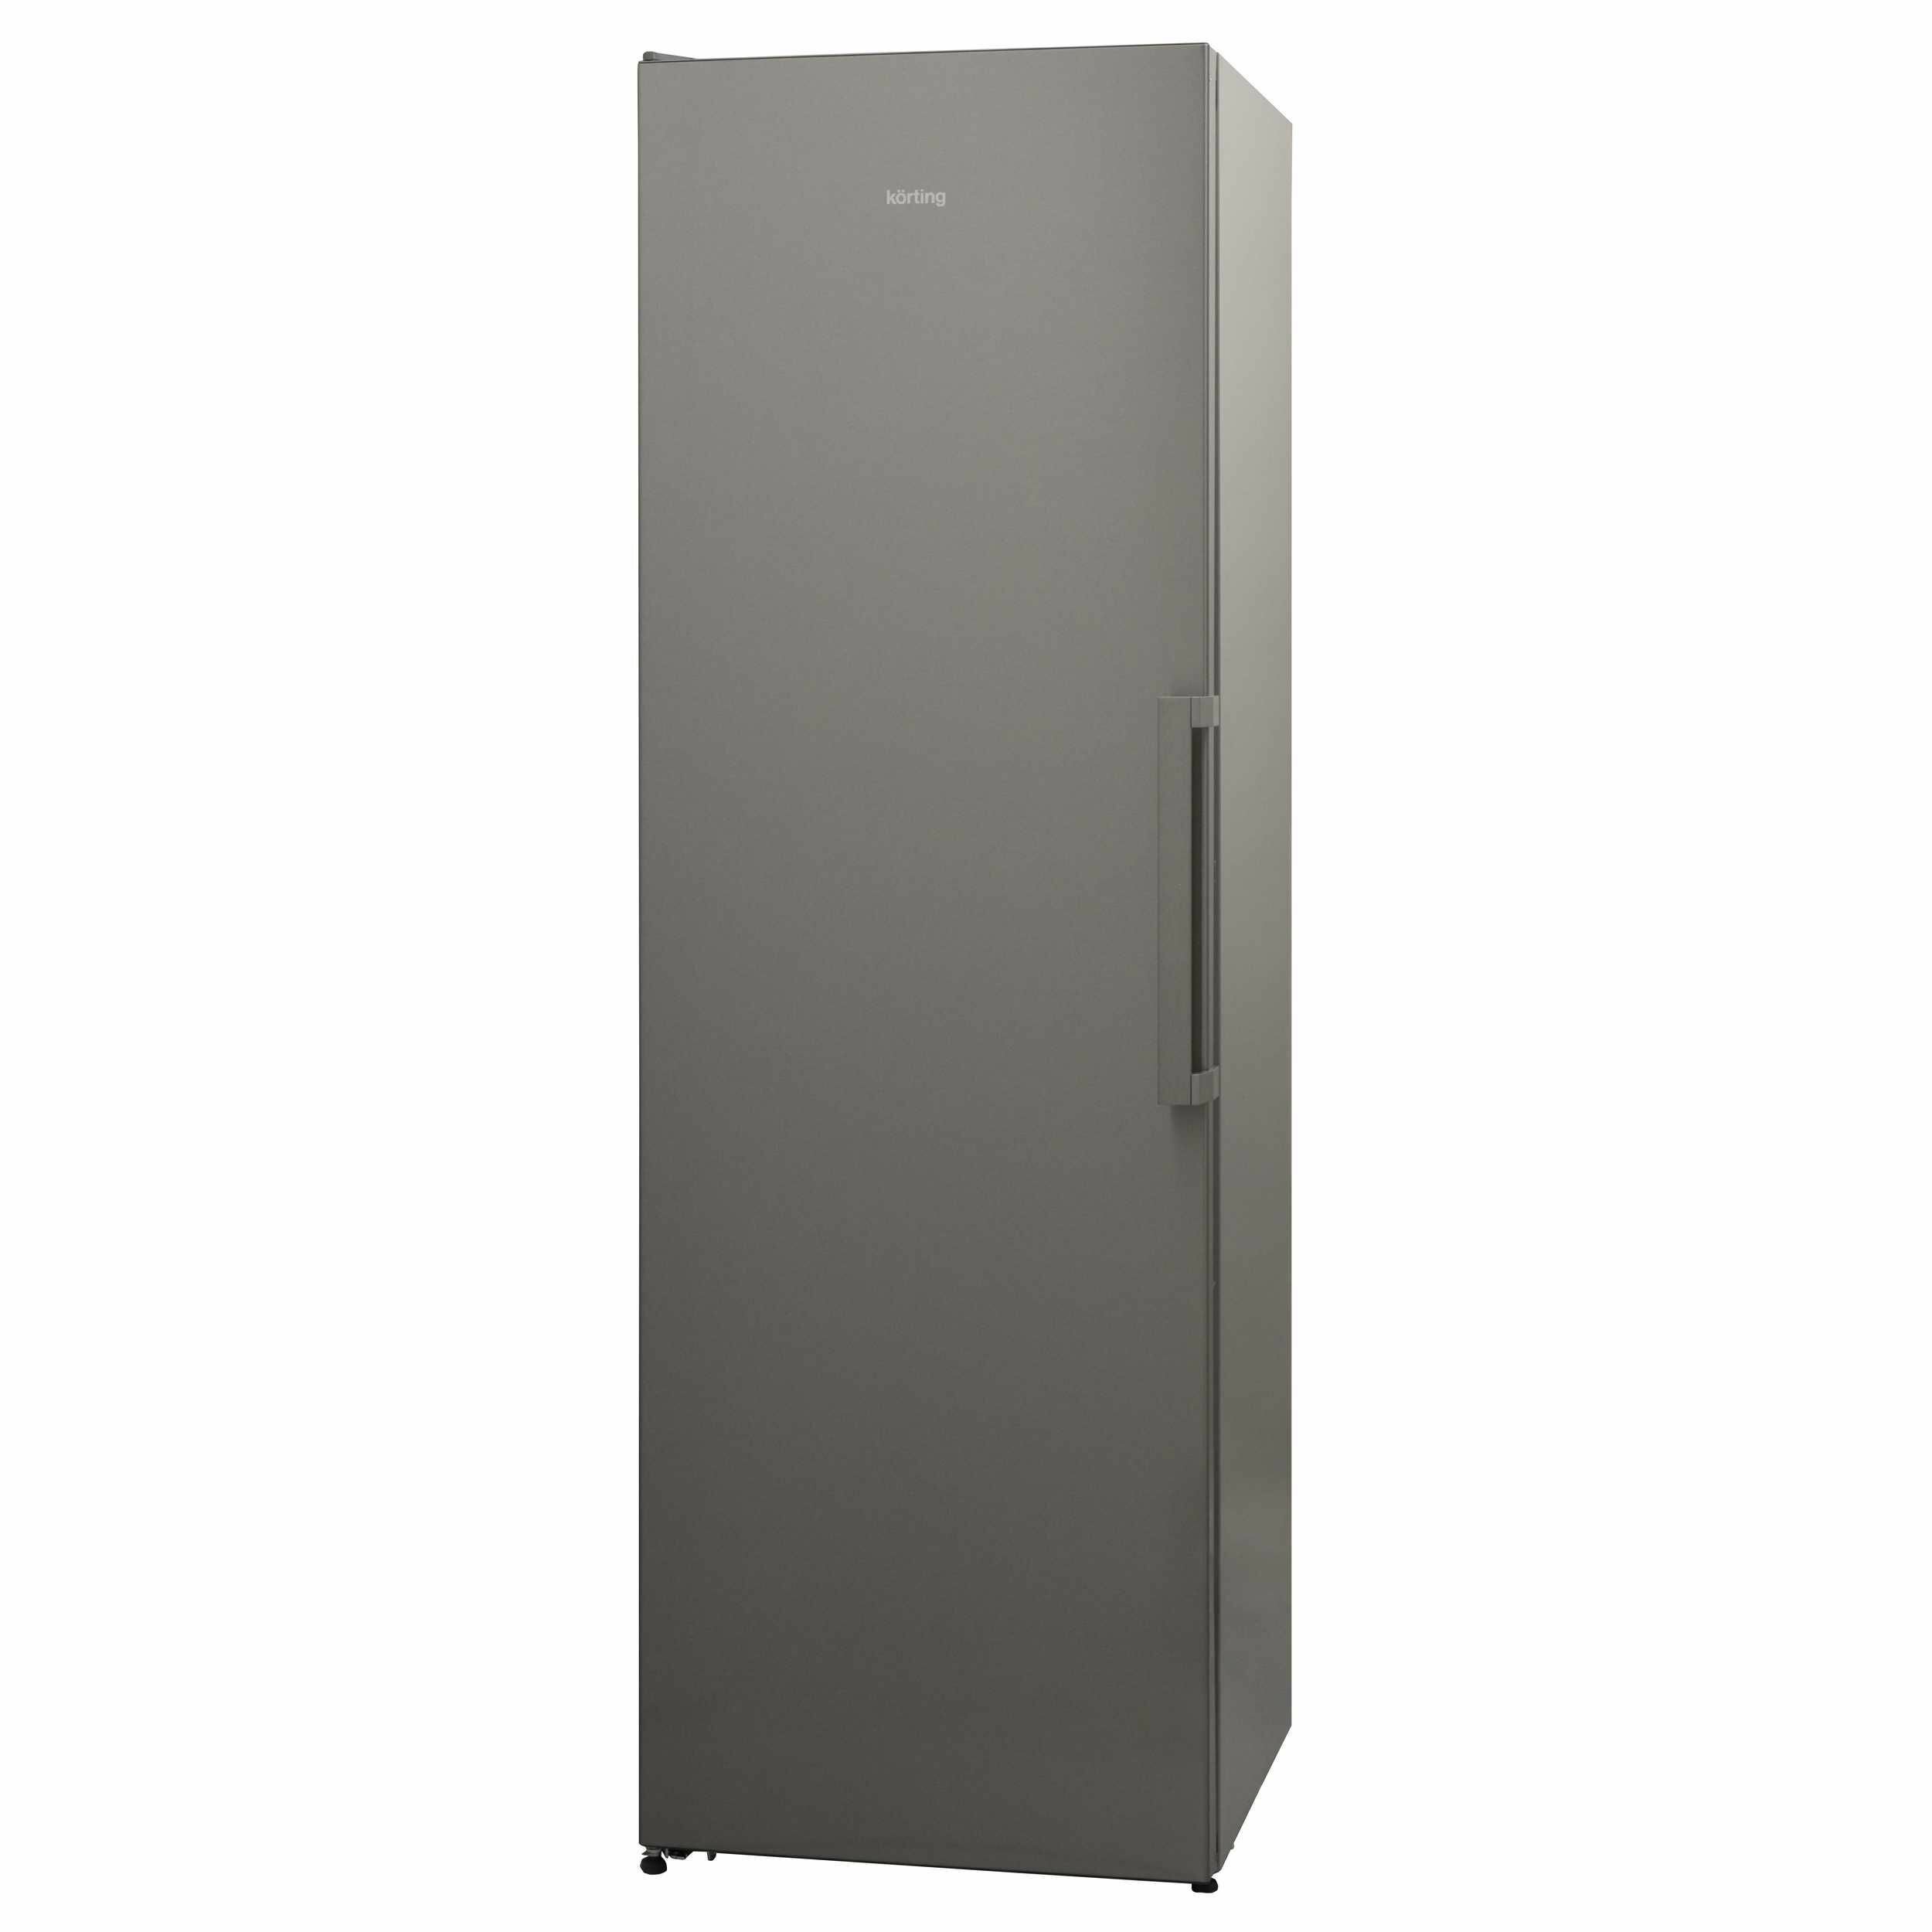 Однокамерный холодильник Korting - фото №4